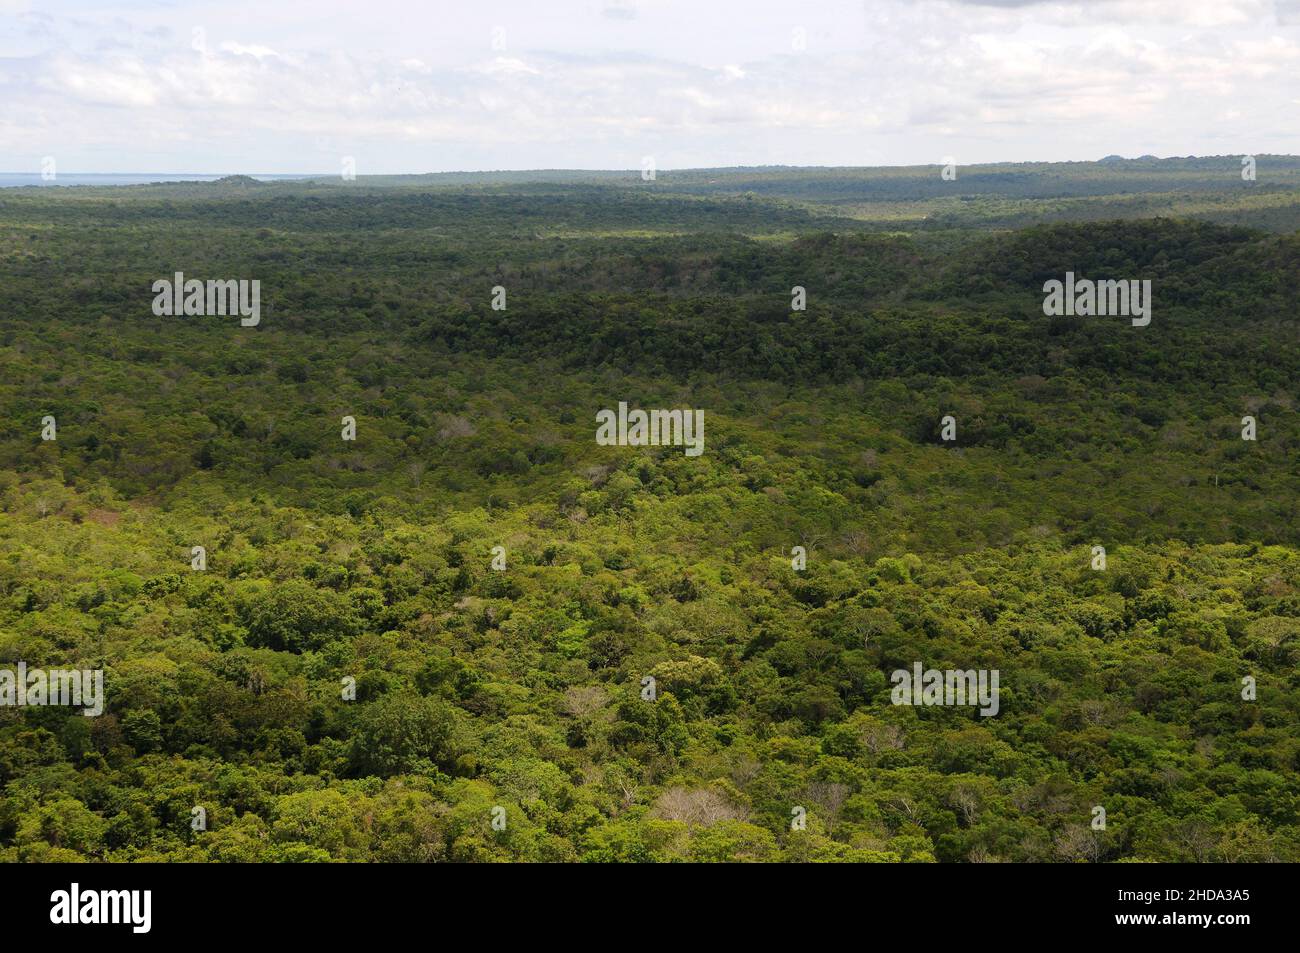 Vue sur la végétation amazonienne de la savane dans la ville d'Alter do Chão, dans l'État de Pará, au Brésil. Banque D'Images